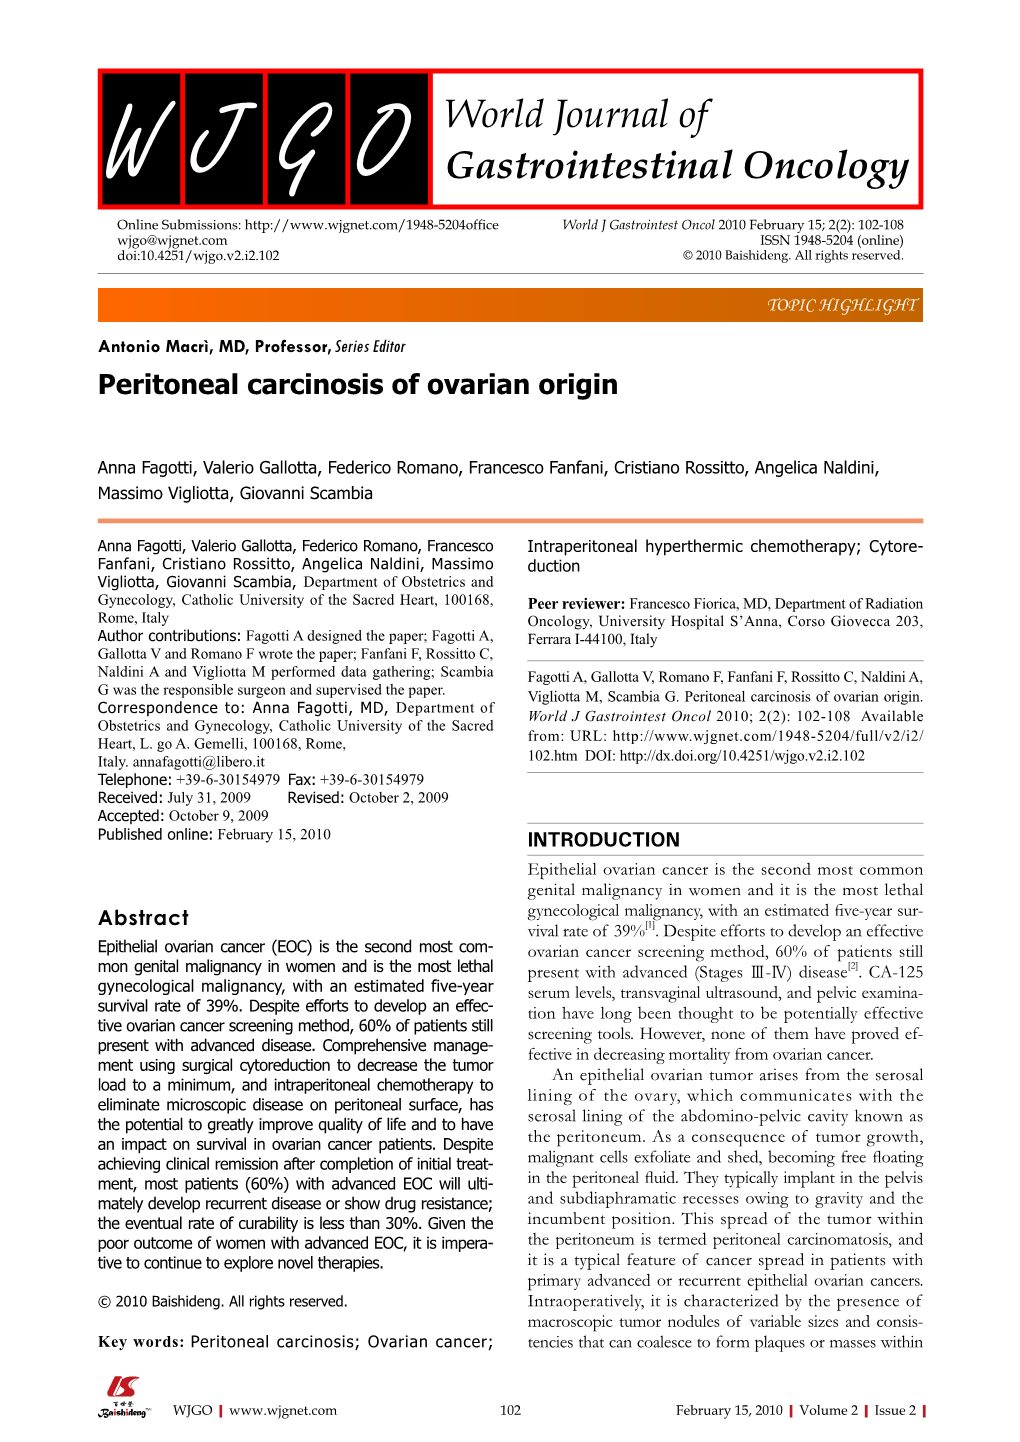 Peritoneal Carcinosis of Ovarian Origin